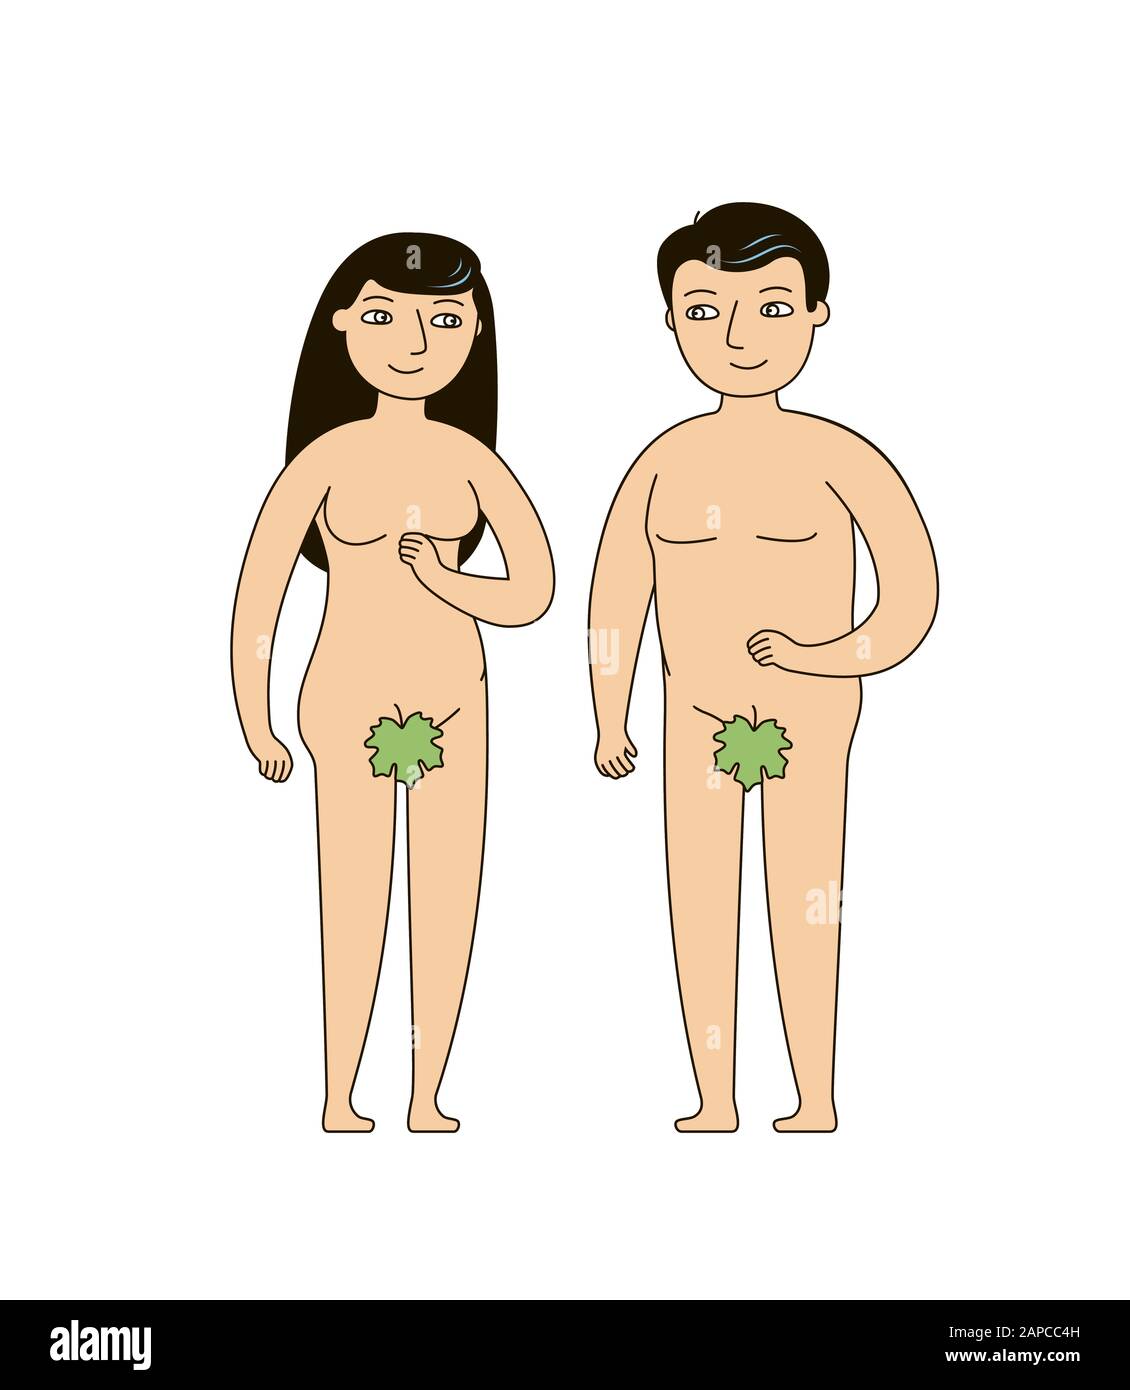 Adamo ed Eva. Narrazione biblica di origine umana. Illustrazione vettoriale Illustrazione Vettoriale